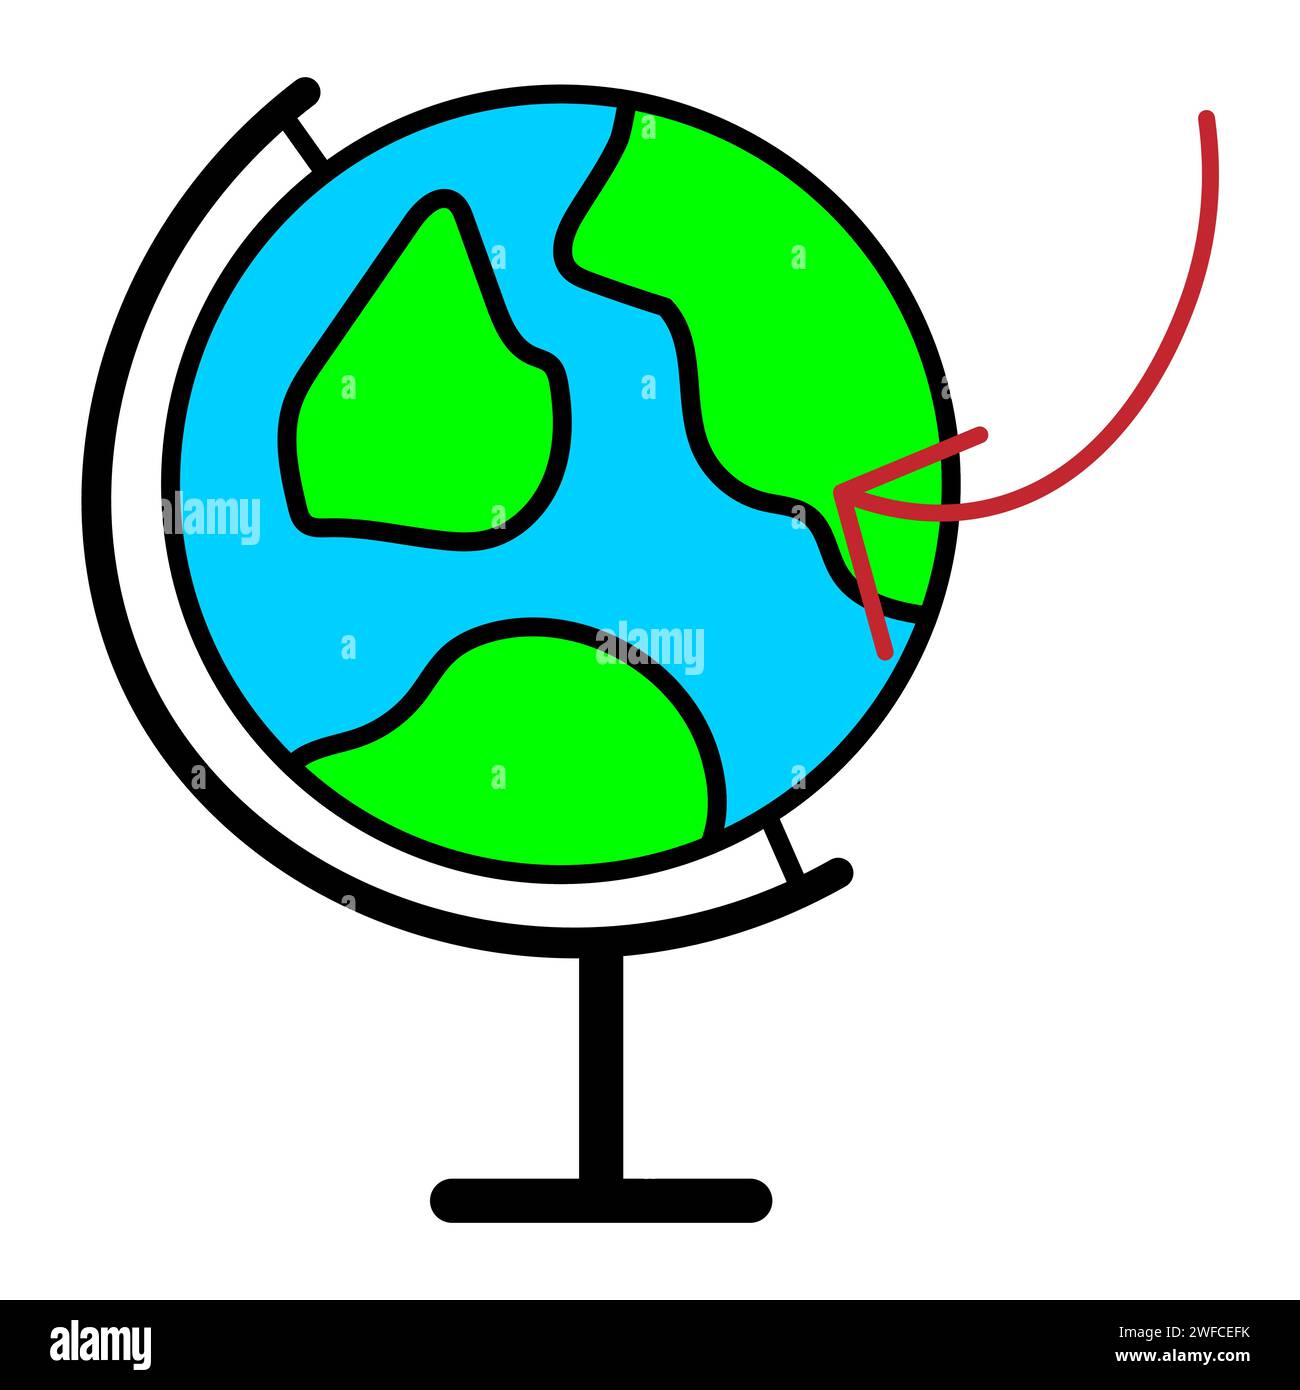 globo scolastico. Pianeta Terra. Segnare sul globo per viaggiare. Concetto di viaggio. Illustrazione vettoriale. immagine stock. EPS 10. Illustrazione Vettoriale